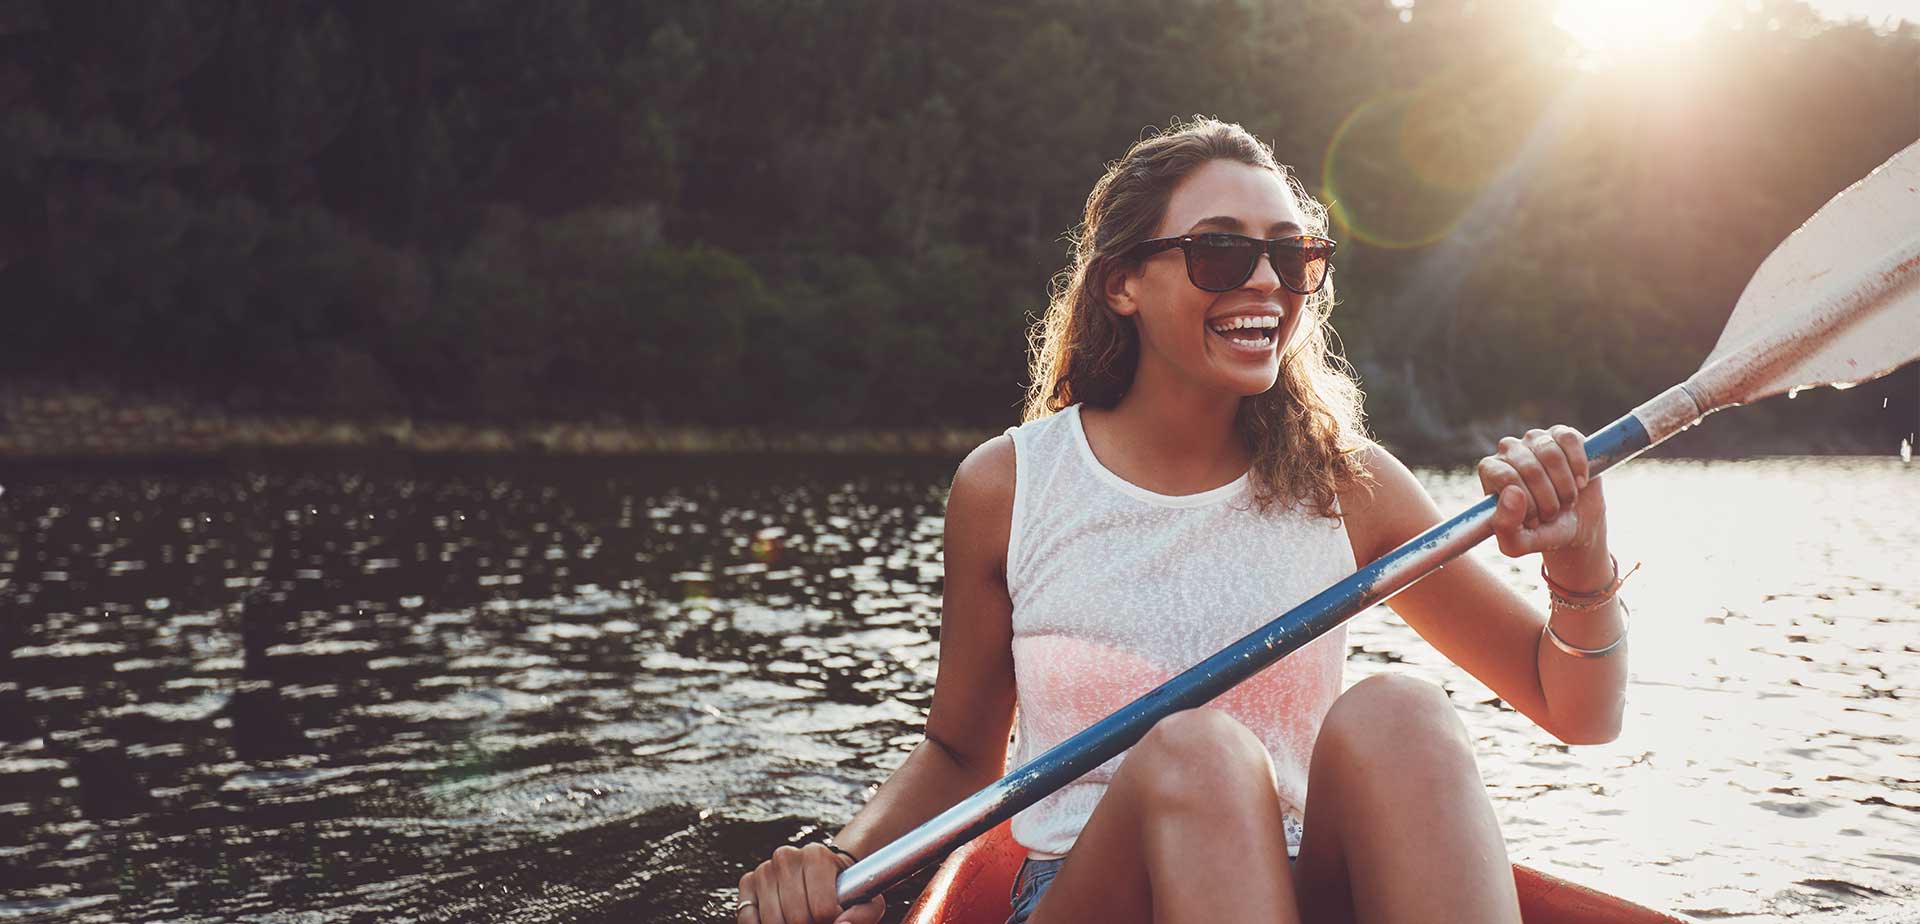 Woman smiling while kayaking